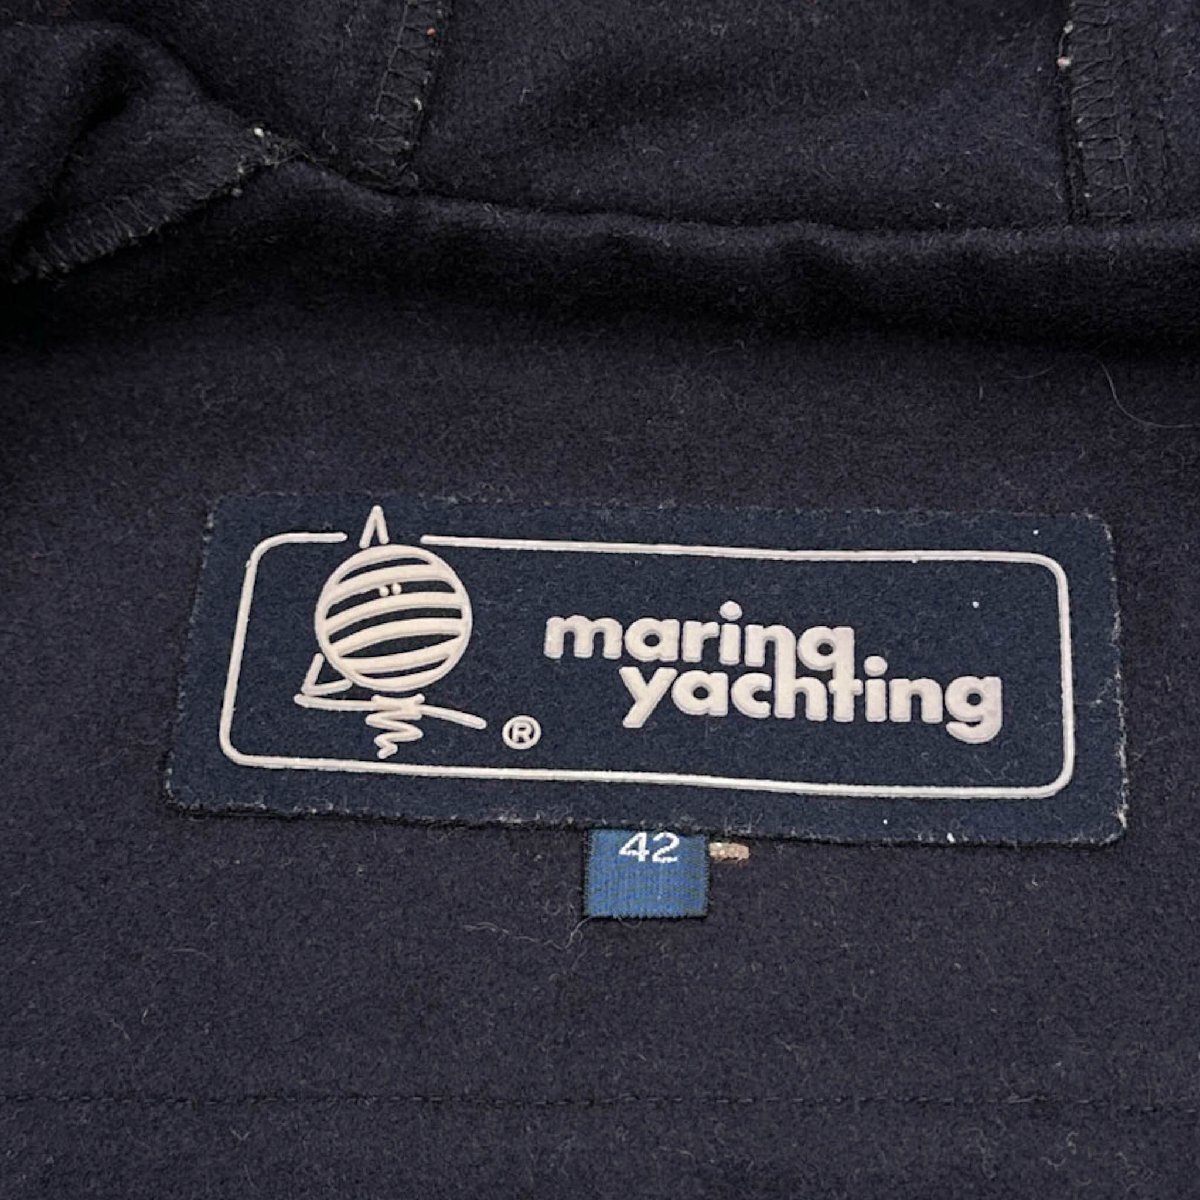 maring yachting マリーナ ヨッティング フード ウール ダッフルコート ( 42 ) /ネイビー_画像5